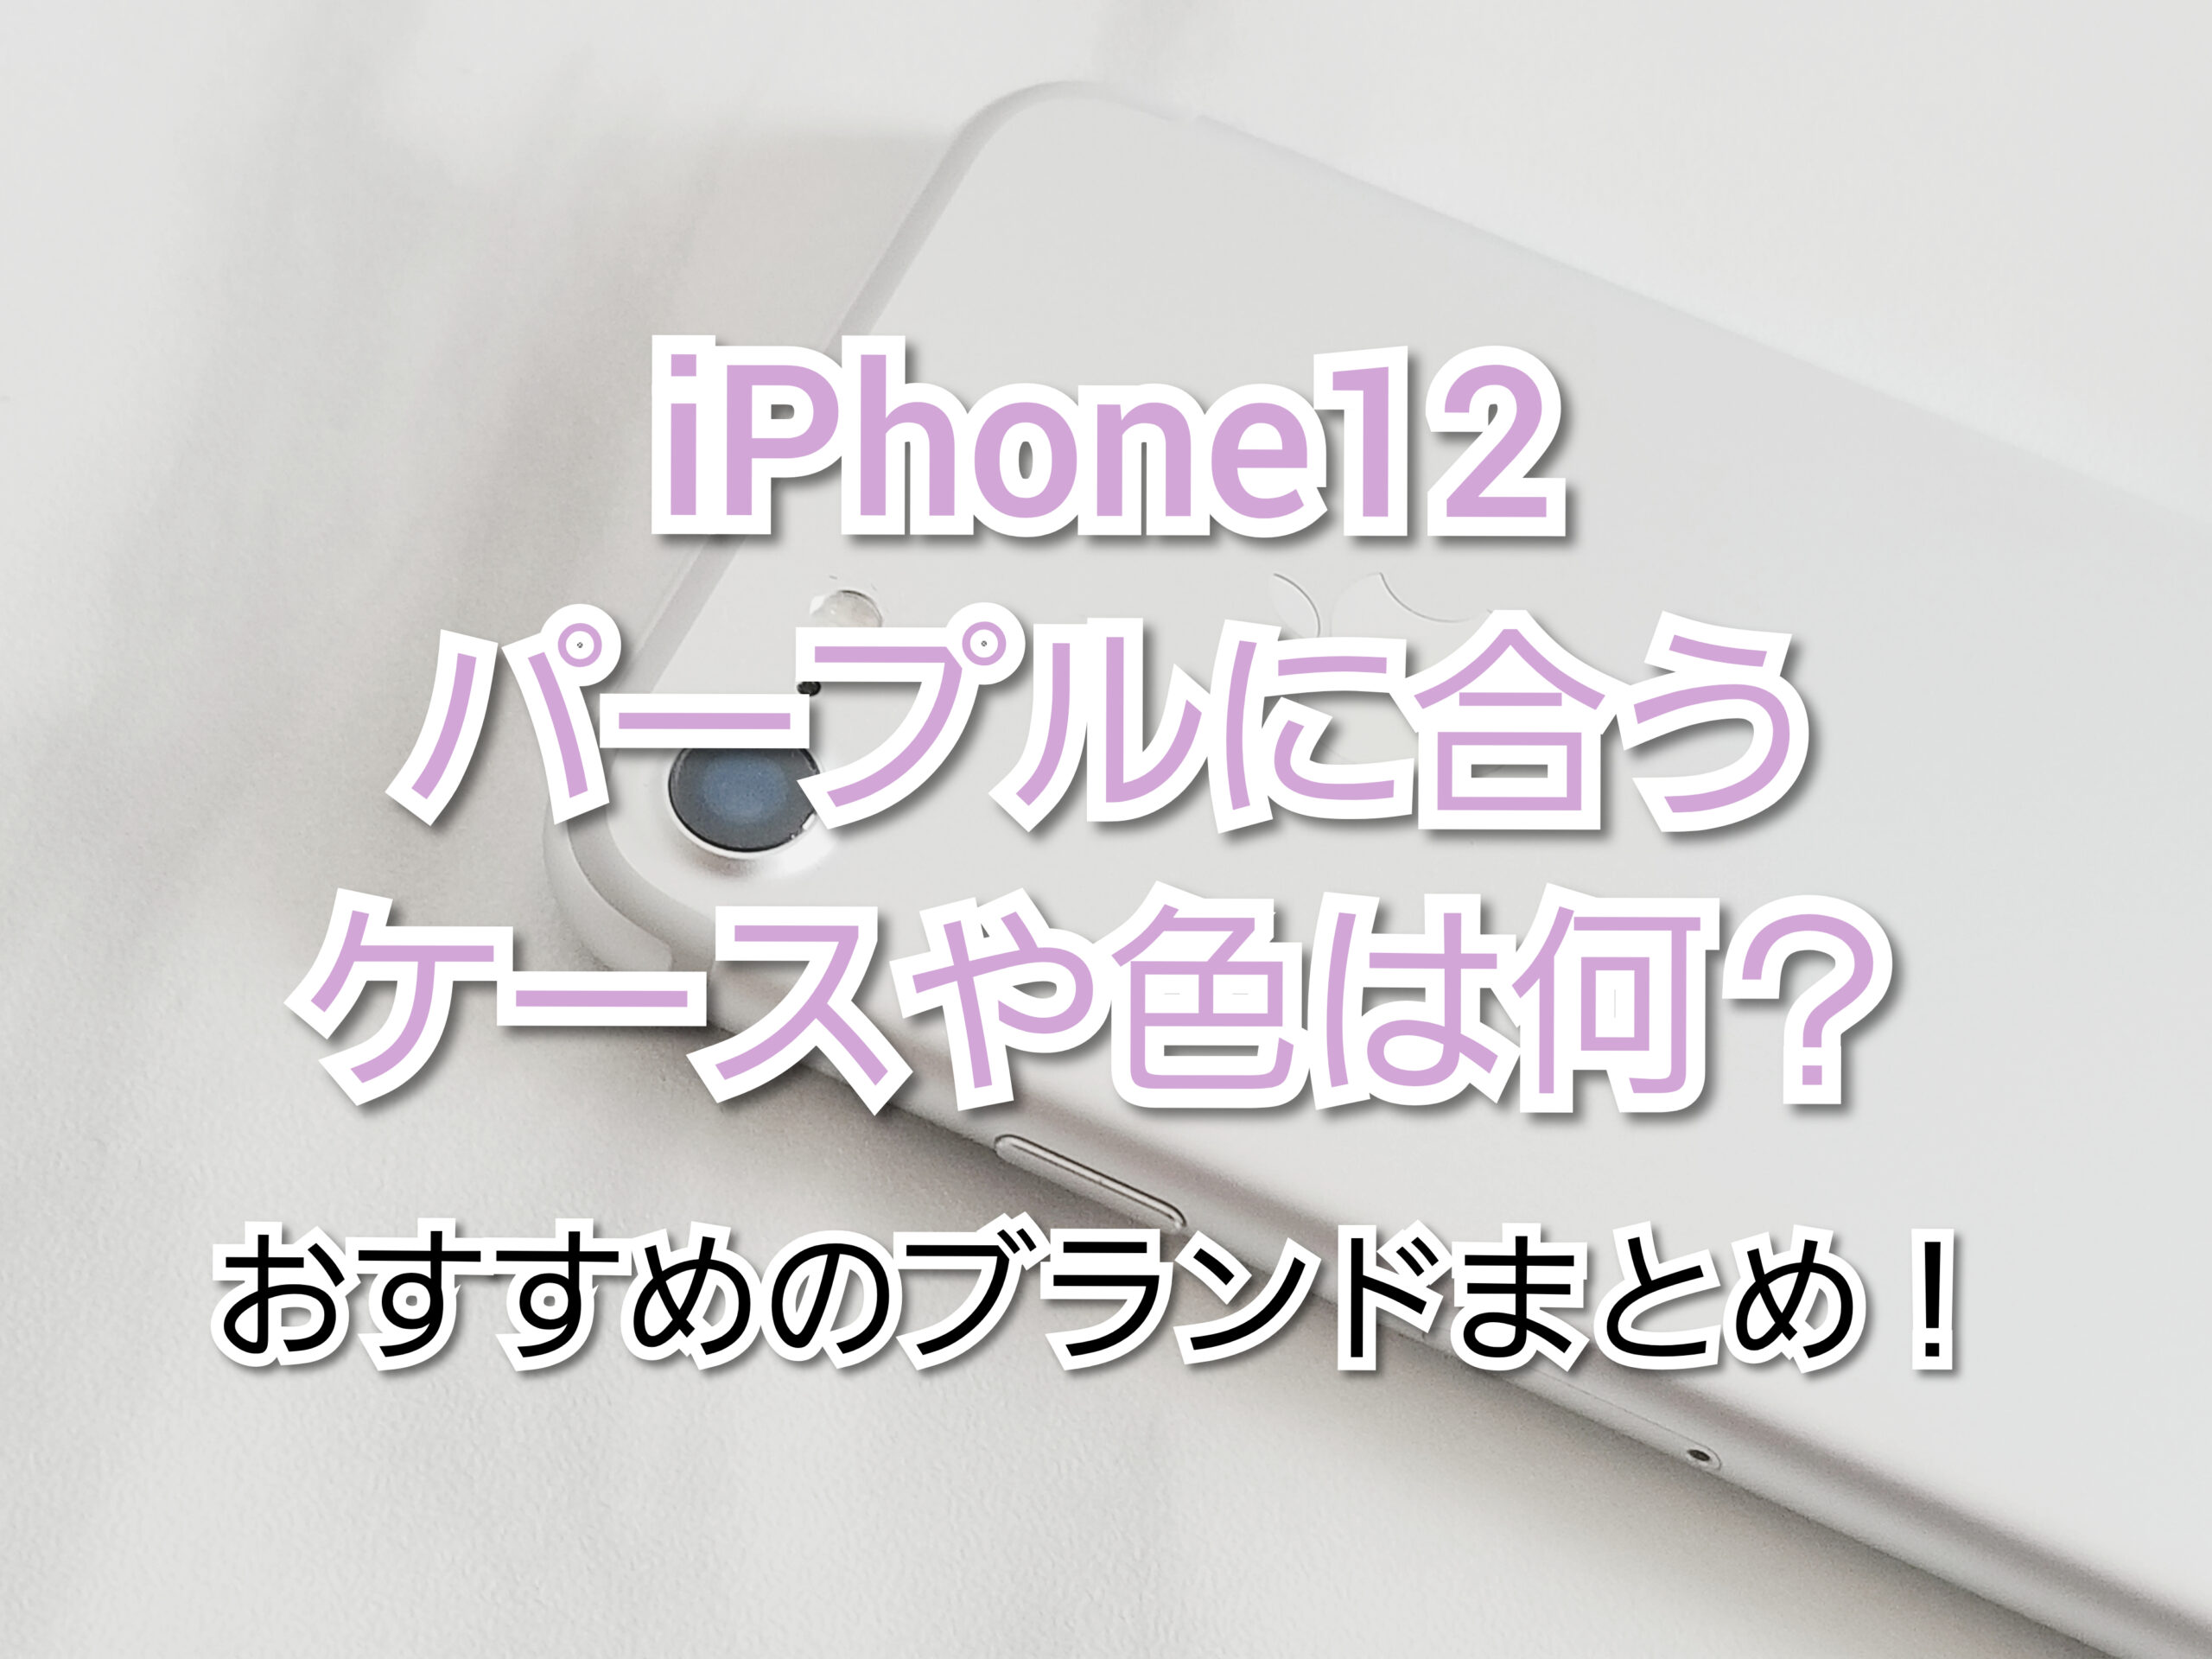 Iphone12パープルに合うケースや色は何 おすすめブランドをまとめてみました Trendview